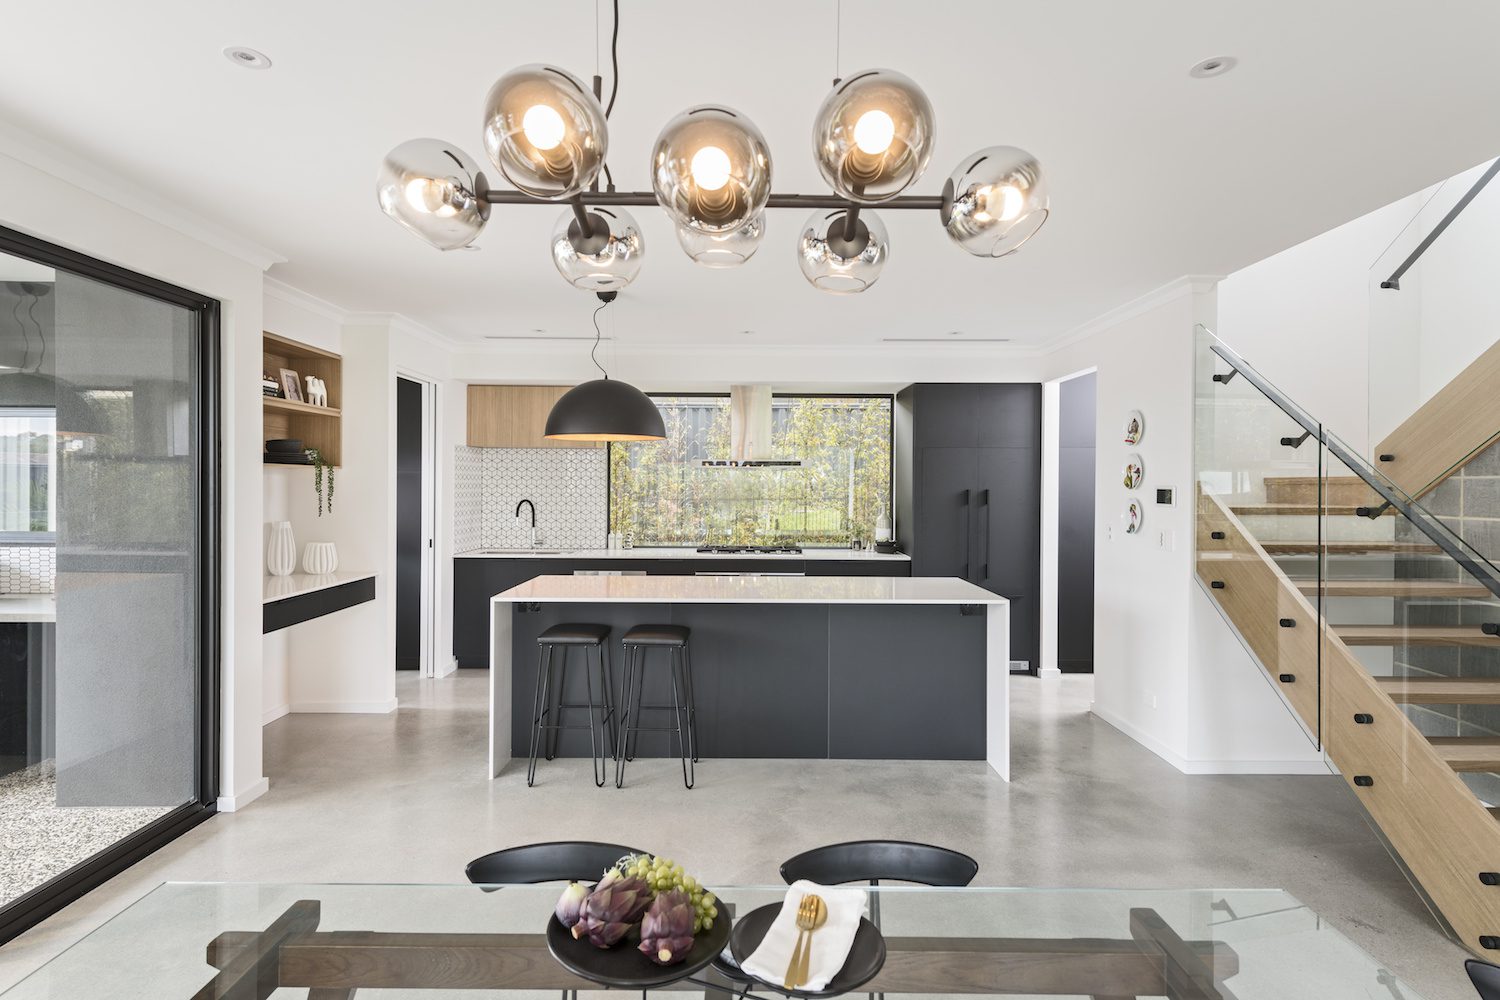 Residential Attitudes kitchen design